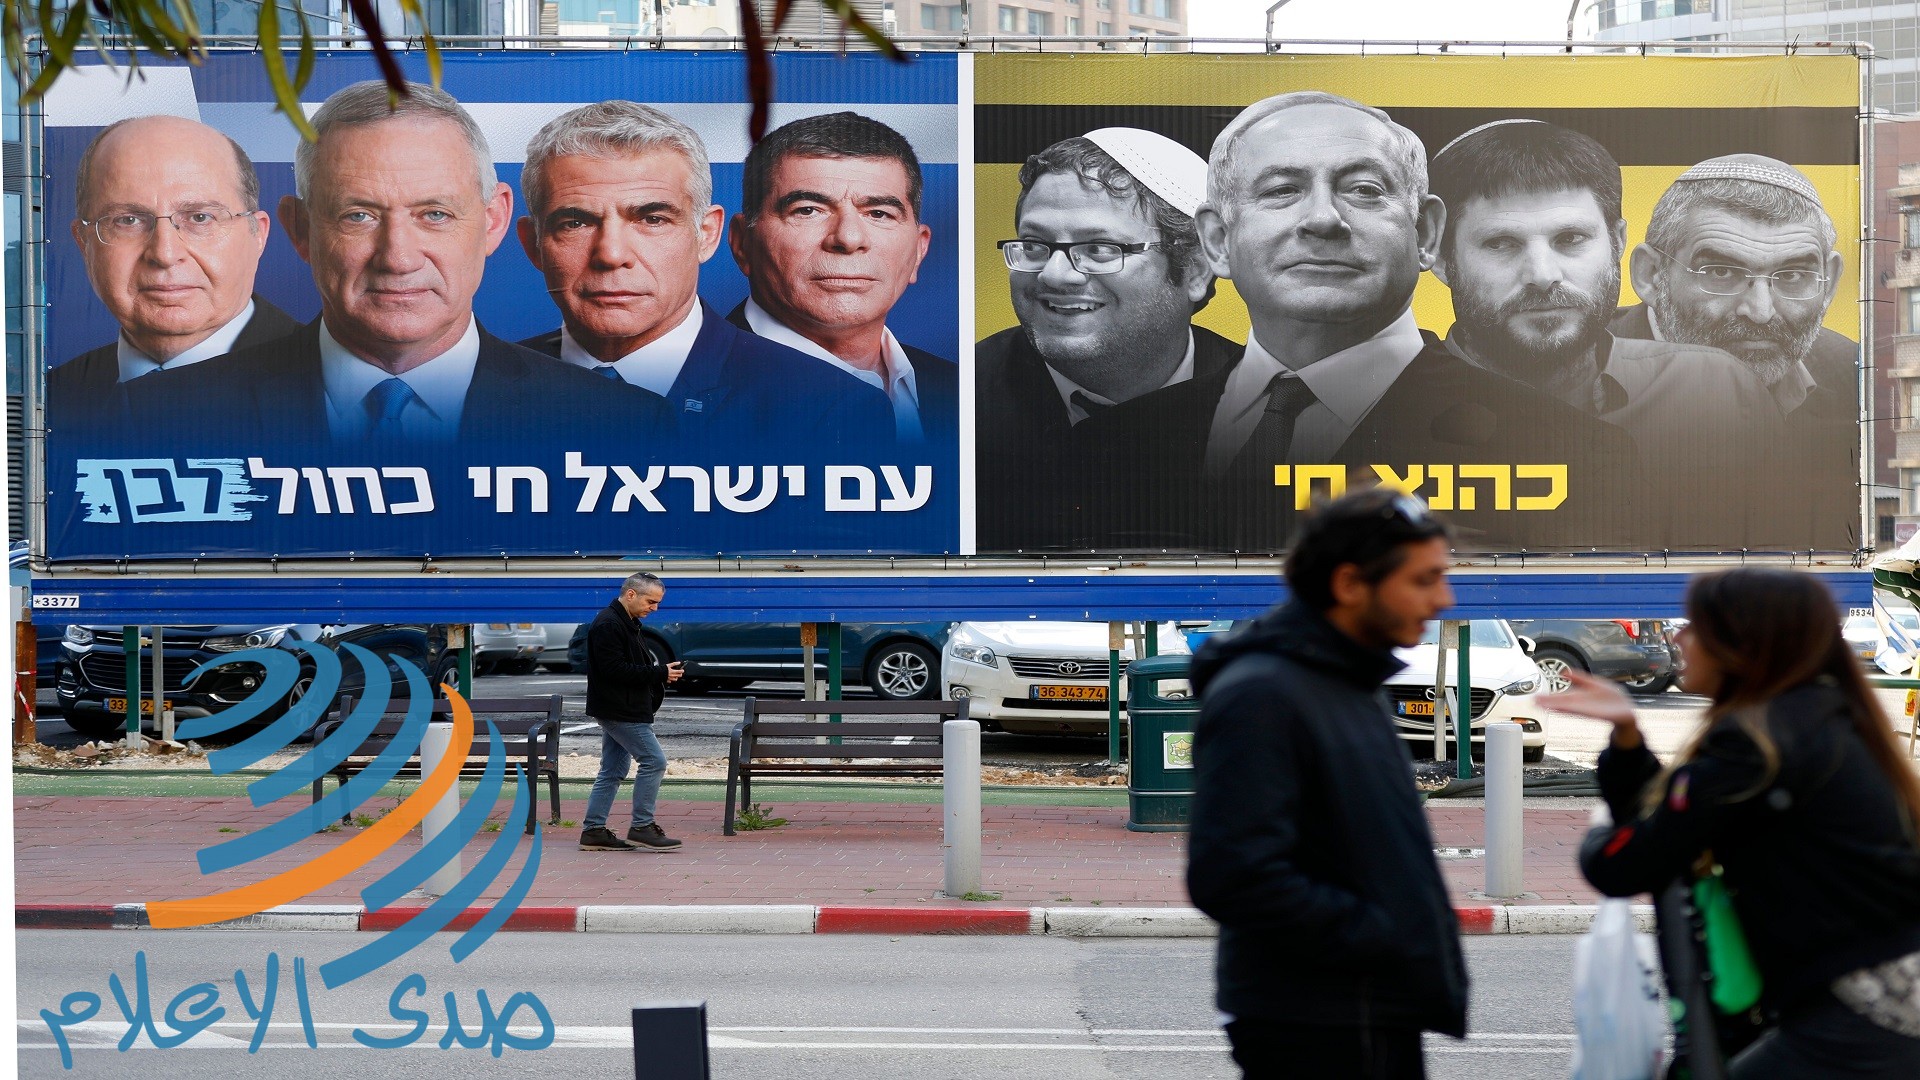 جولة الانتخابات الرابعة في إسرائيل: الديناميات الجديدة والقديمة